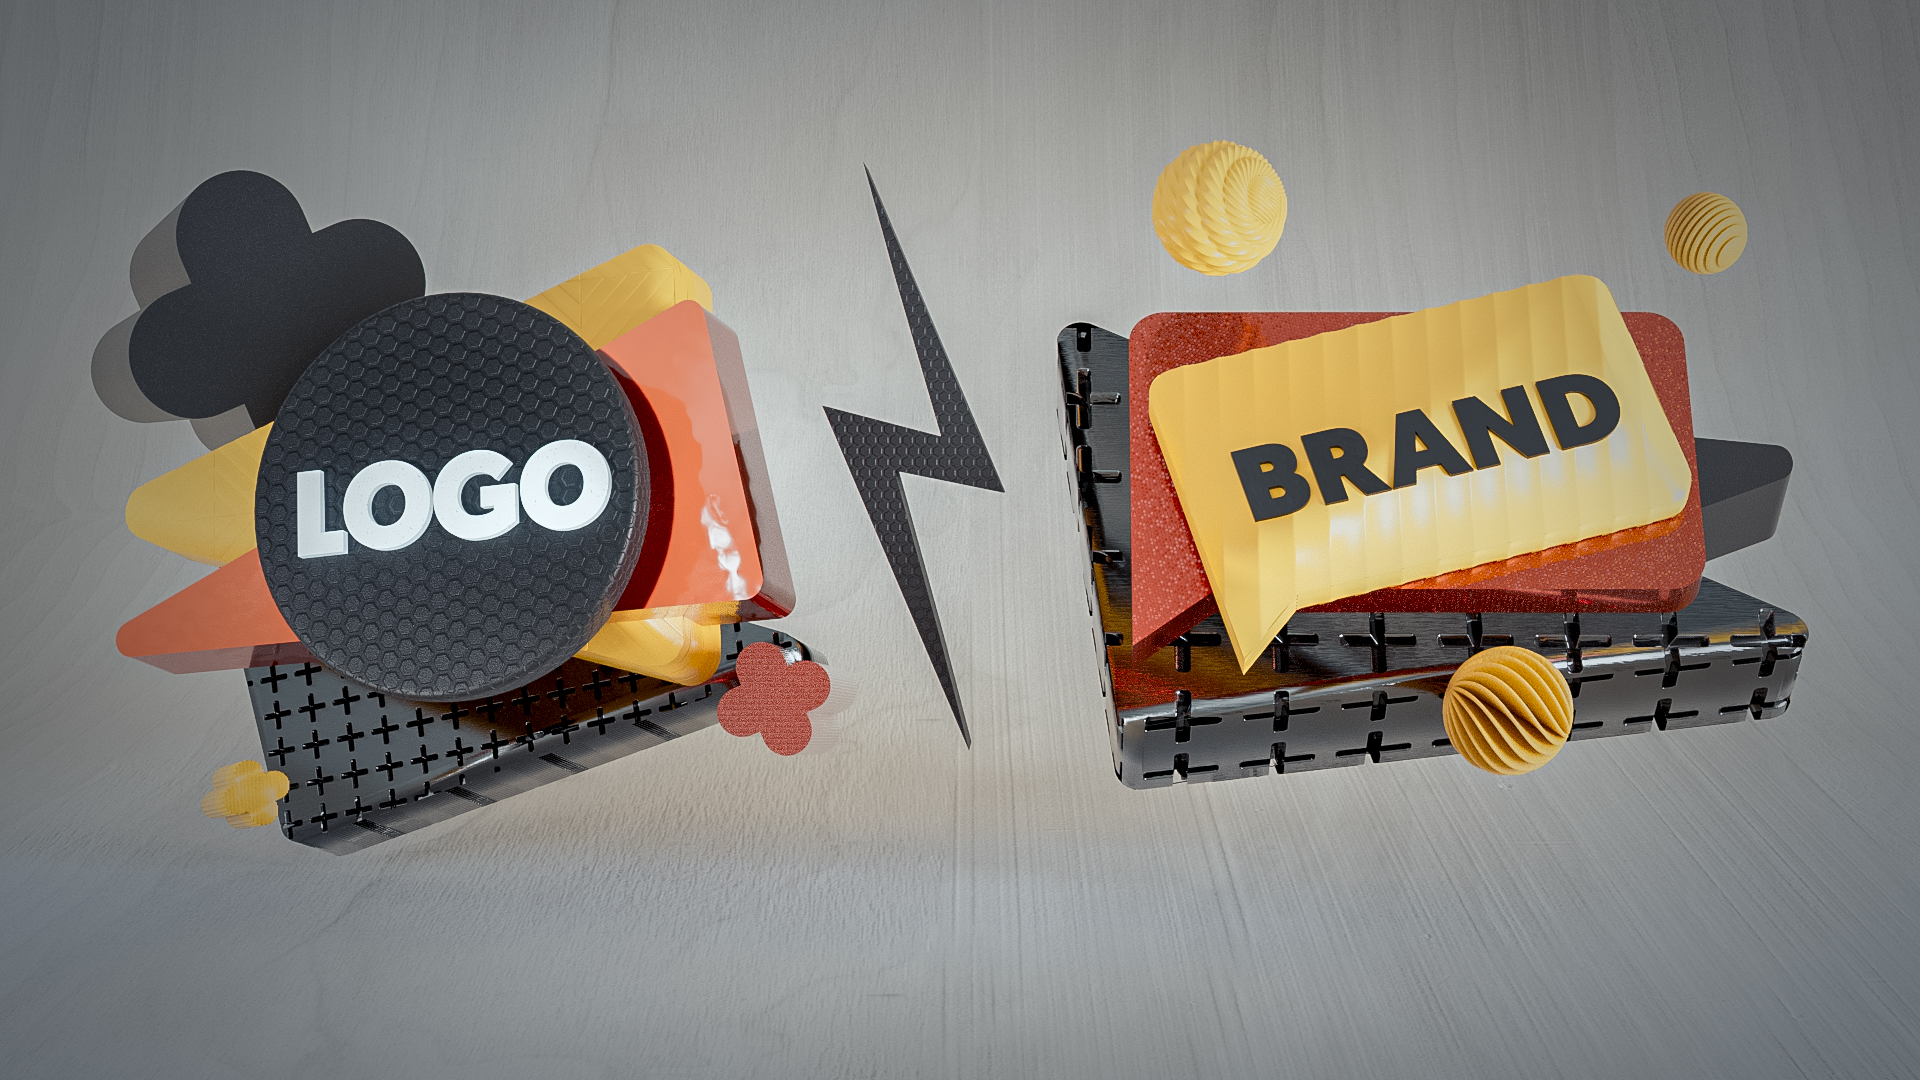 3D illustration of logo vs brand